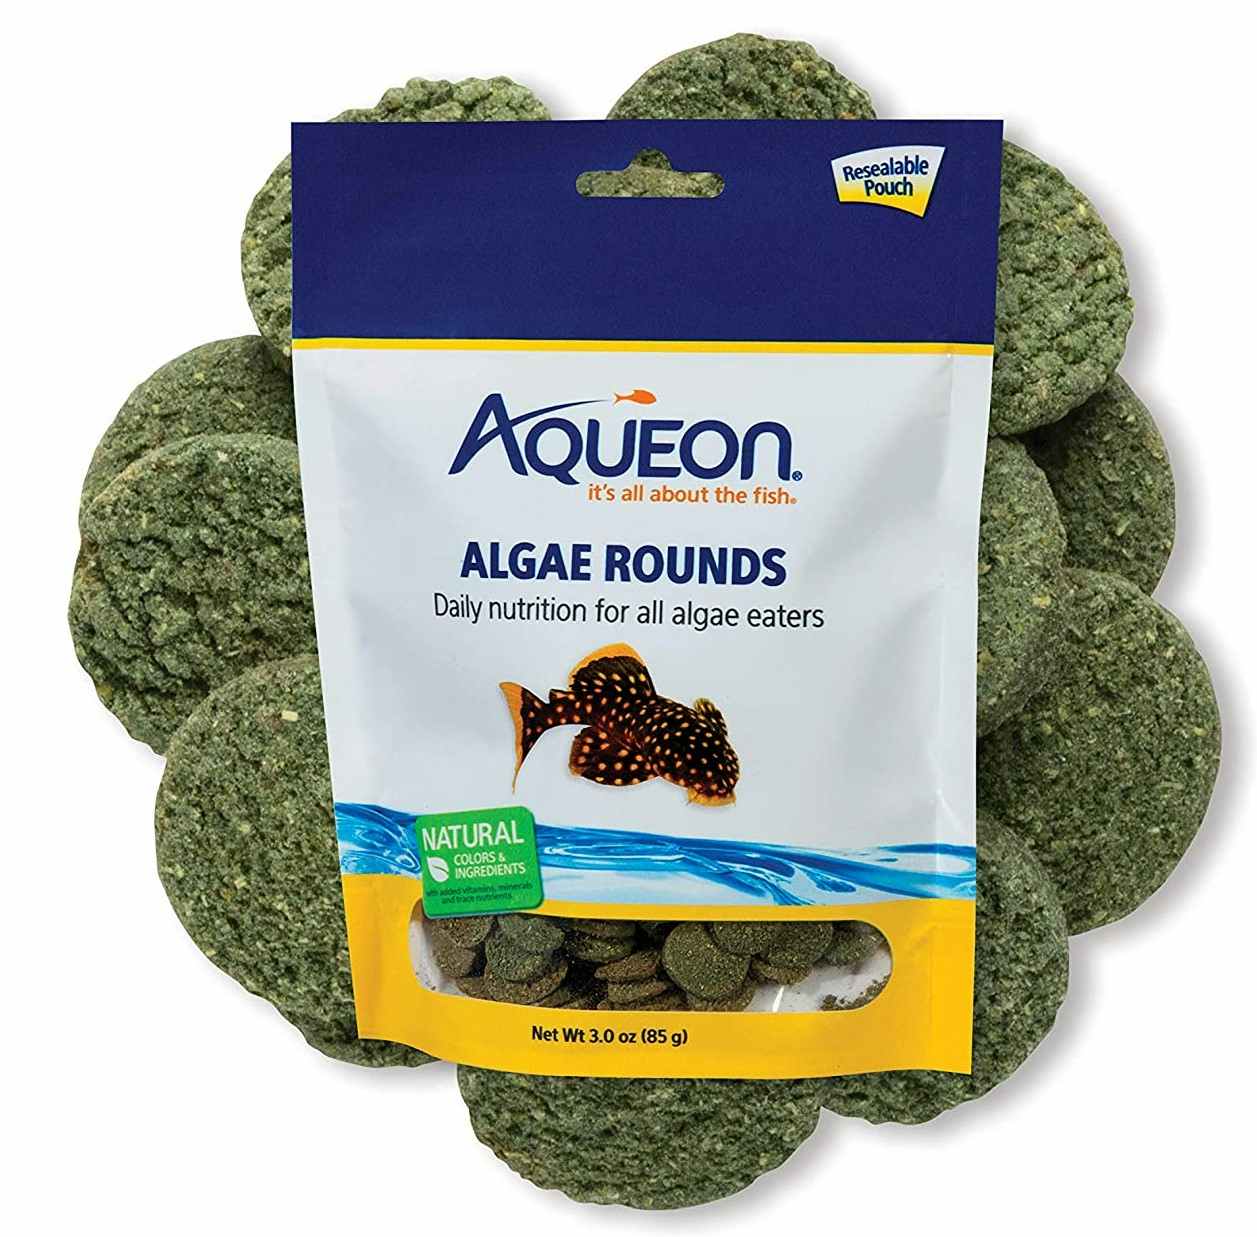 A bag of Aqueon algae fish food.